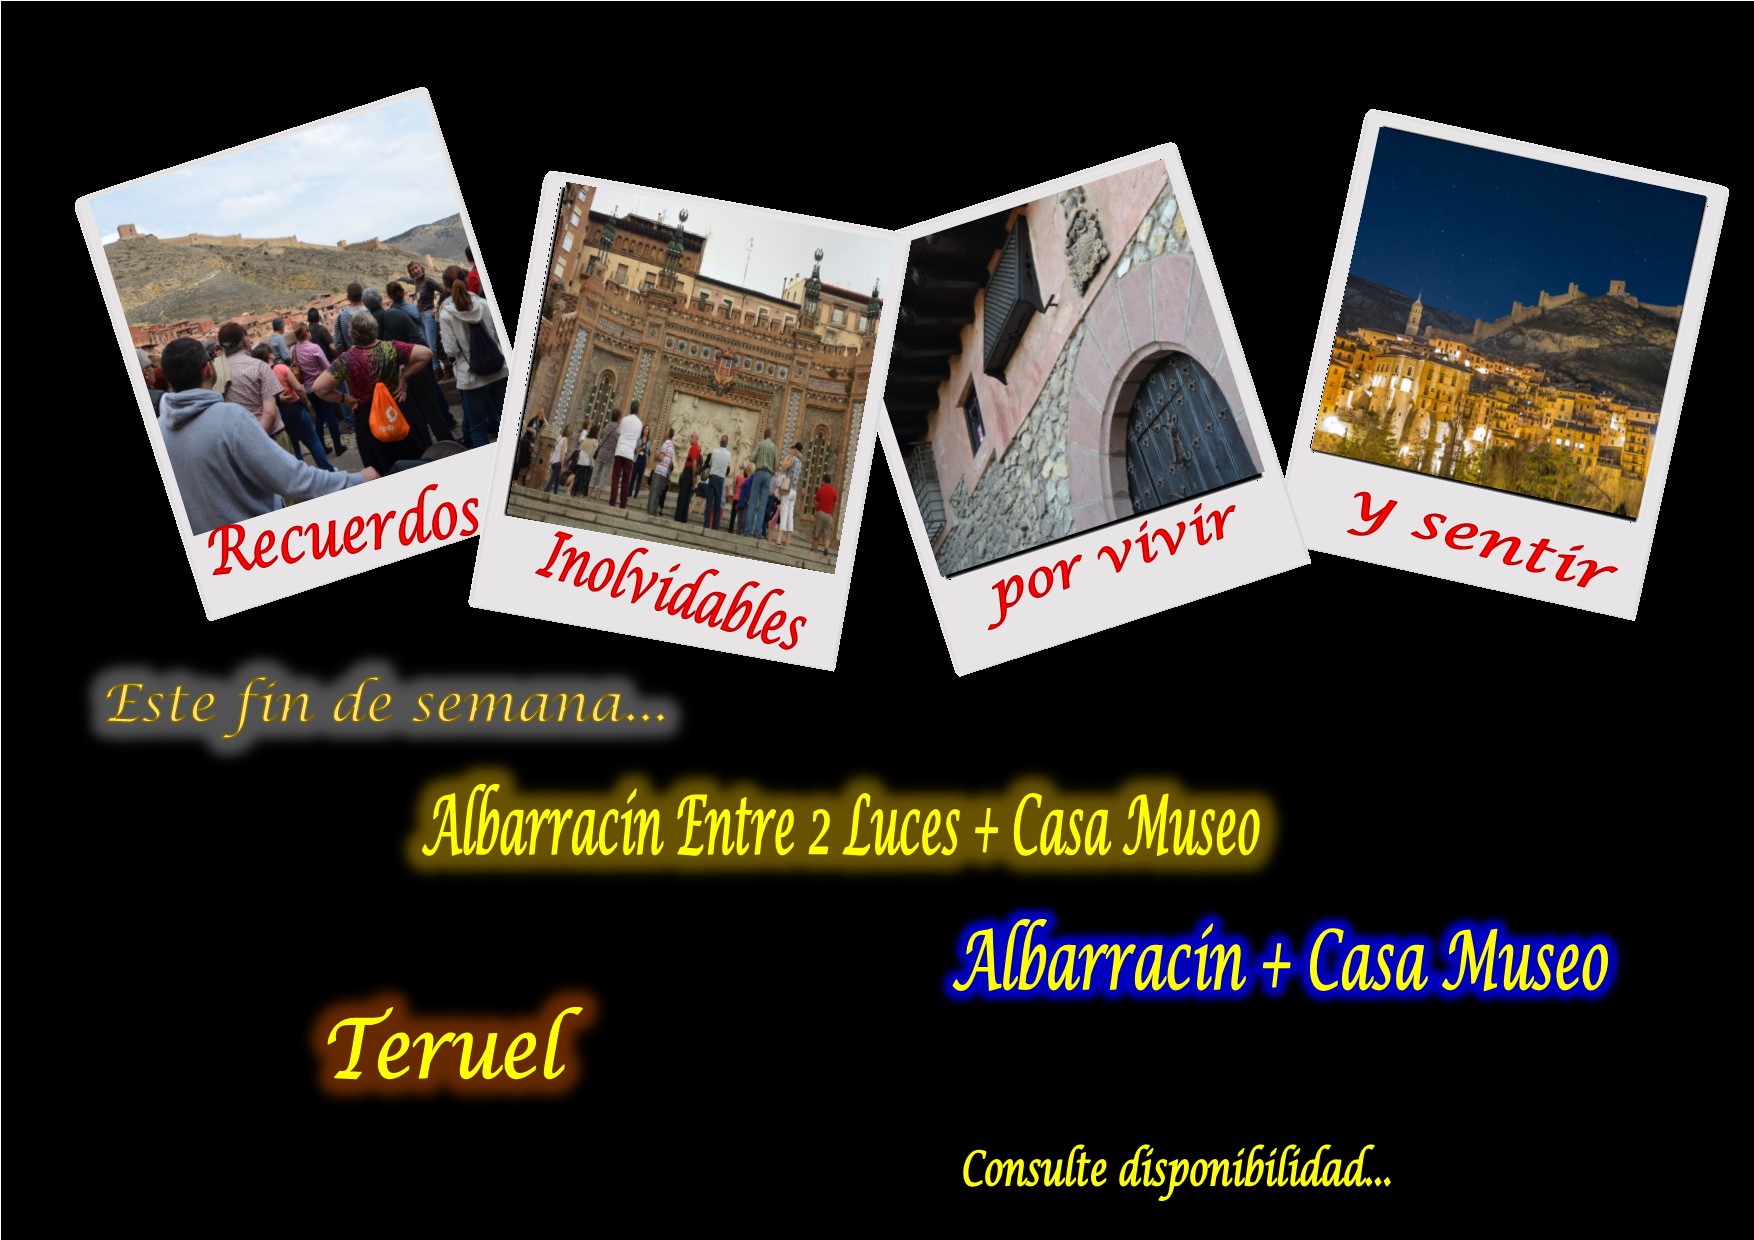 Este fin de semana…Albarracín y Teruel guiados…pero además, el sábado tarde…Albarracín Entre 2 Luces y Casa Museo con sorpresas!